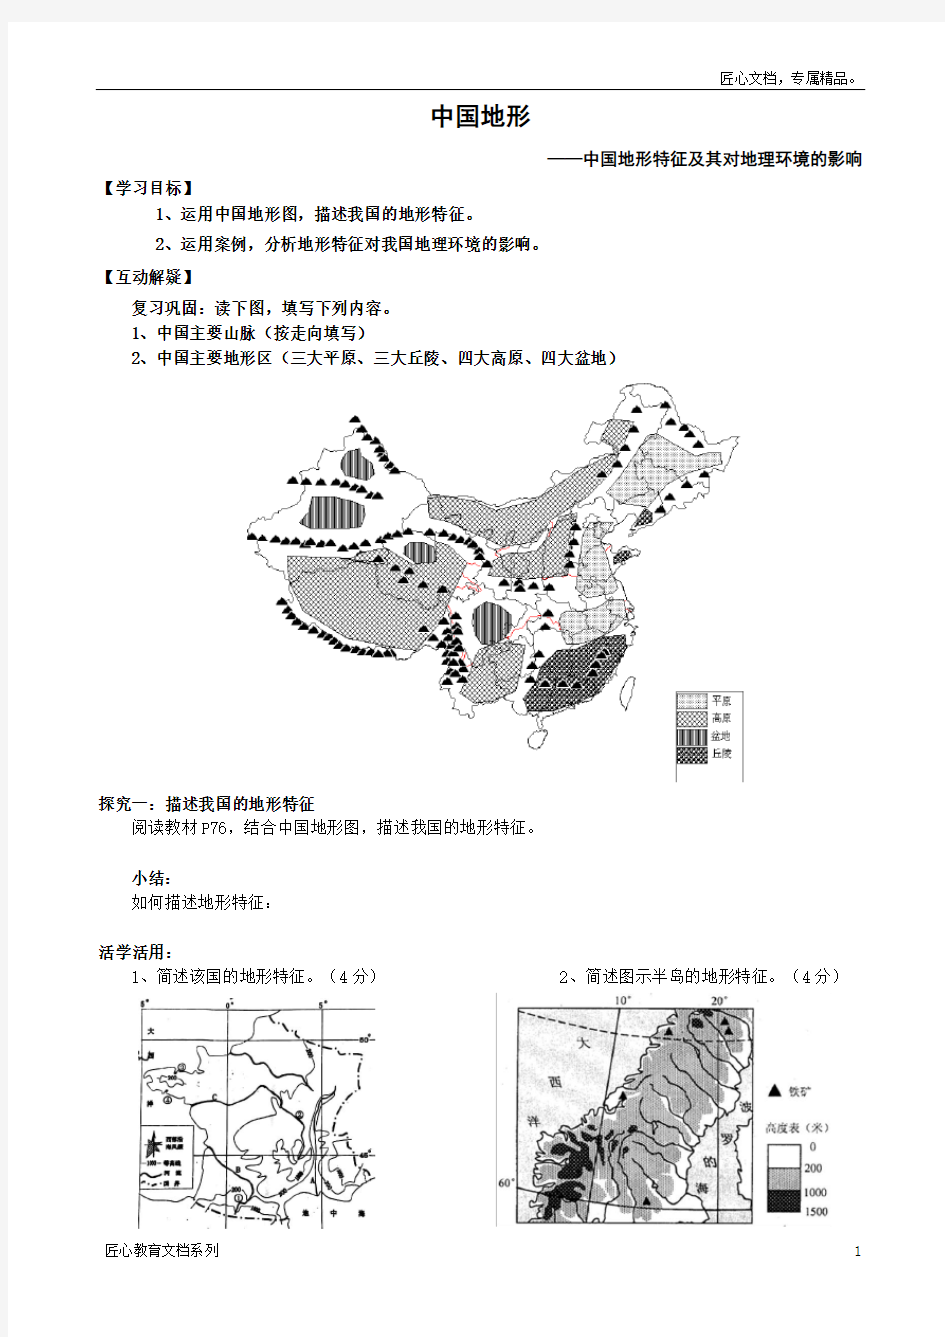 中国地形特征及其对地理环境的影响